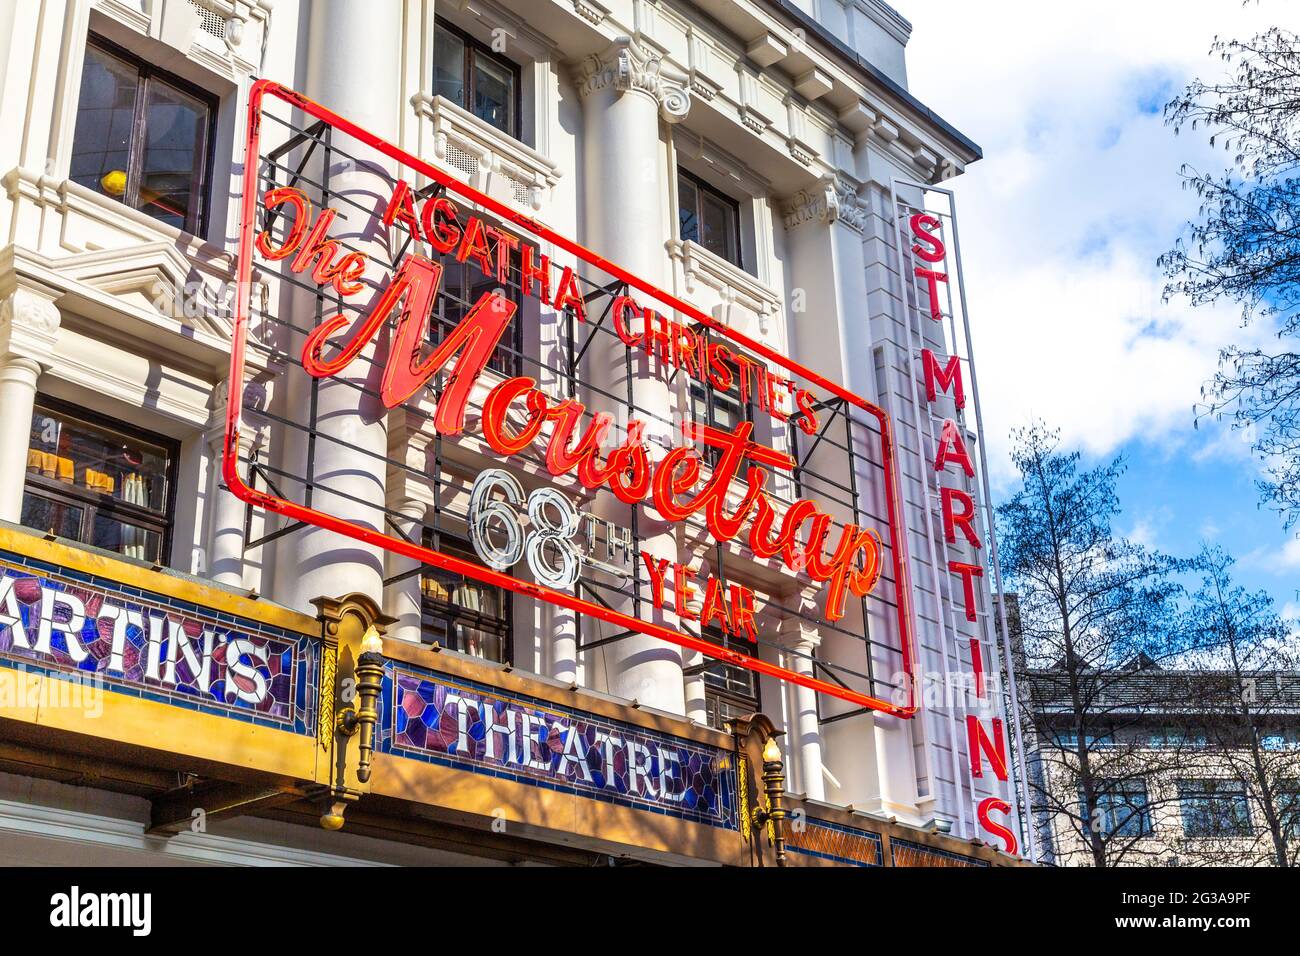 Außenansicht des St. Martin's Theatre, in dem sich das am längsten laufende Stück im West End befindet - The Mousetrap von Agatha Christie, London, Großbritannien Stockfoto